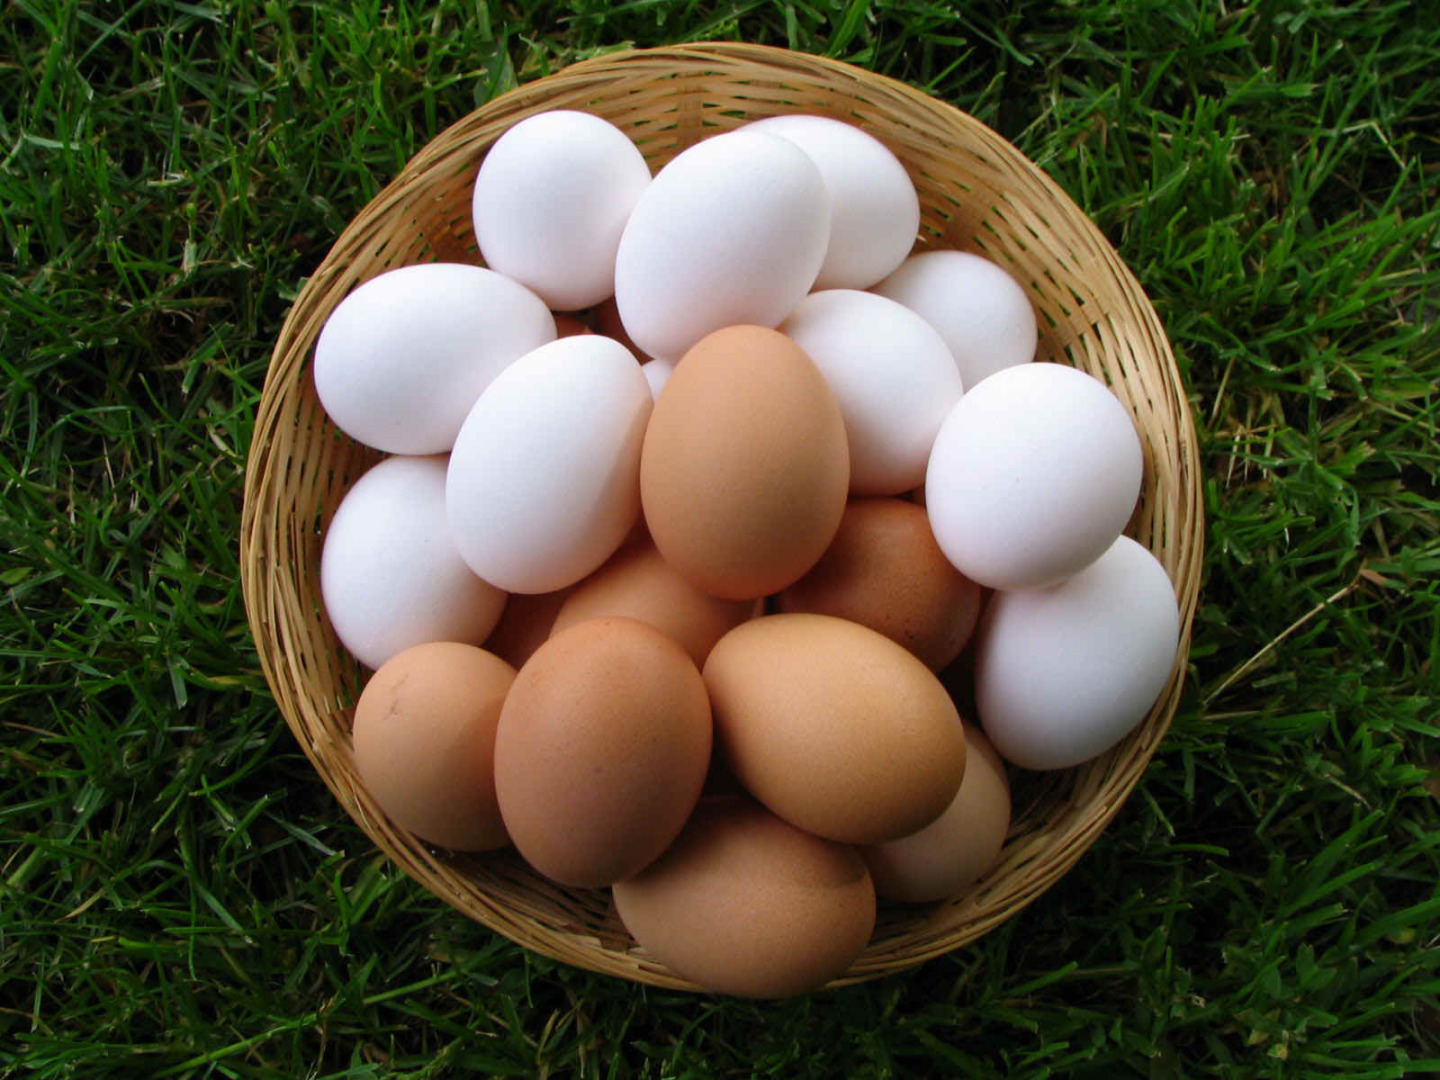 крупные яйца фото